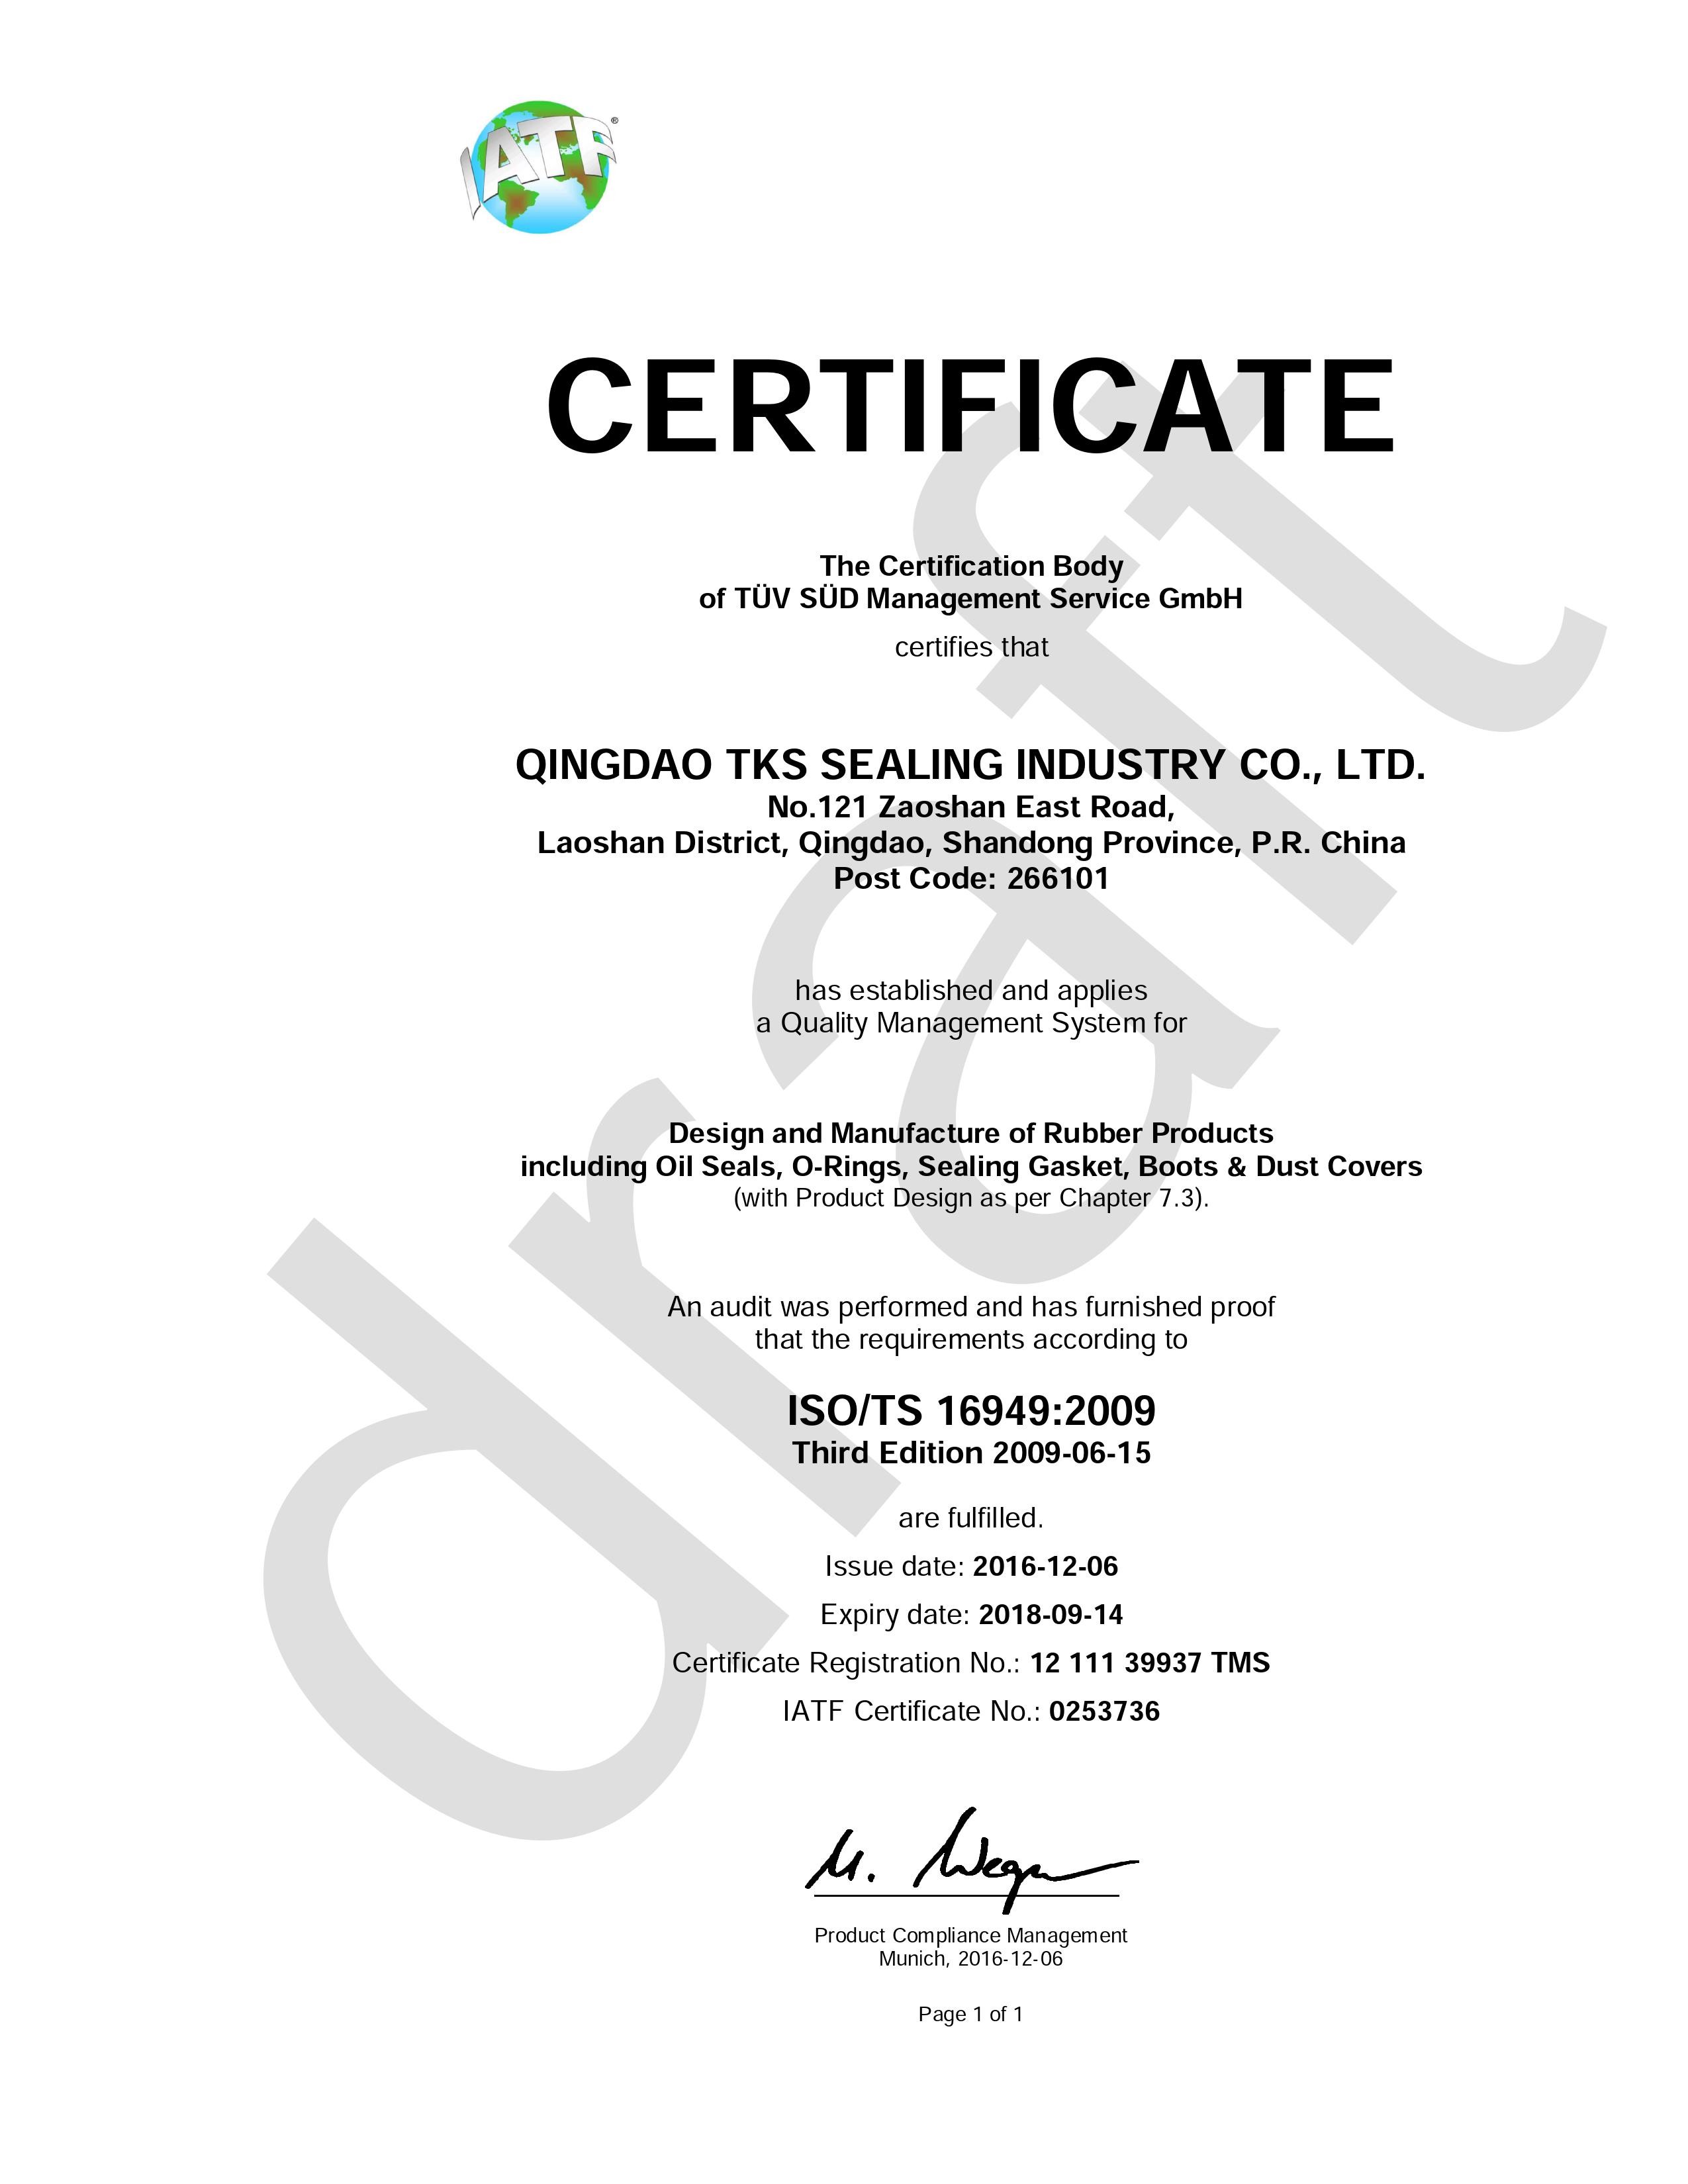 چین Qingdao Global Sealing-tec co., Ltd گواهینامه ها